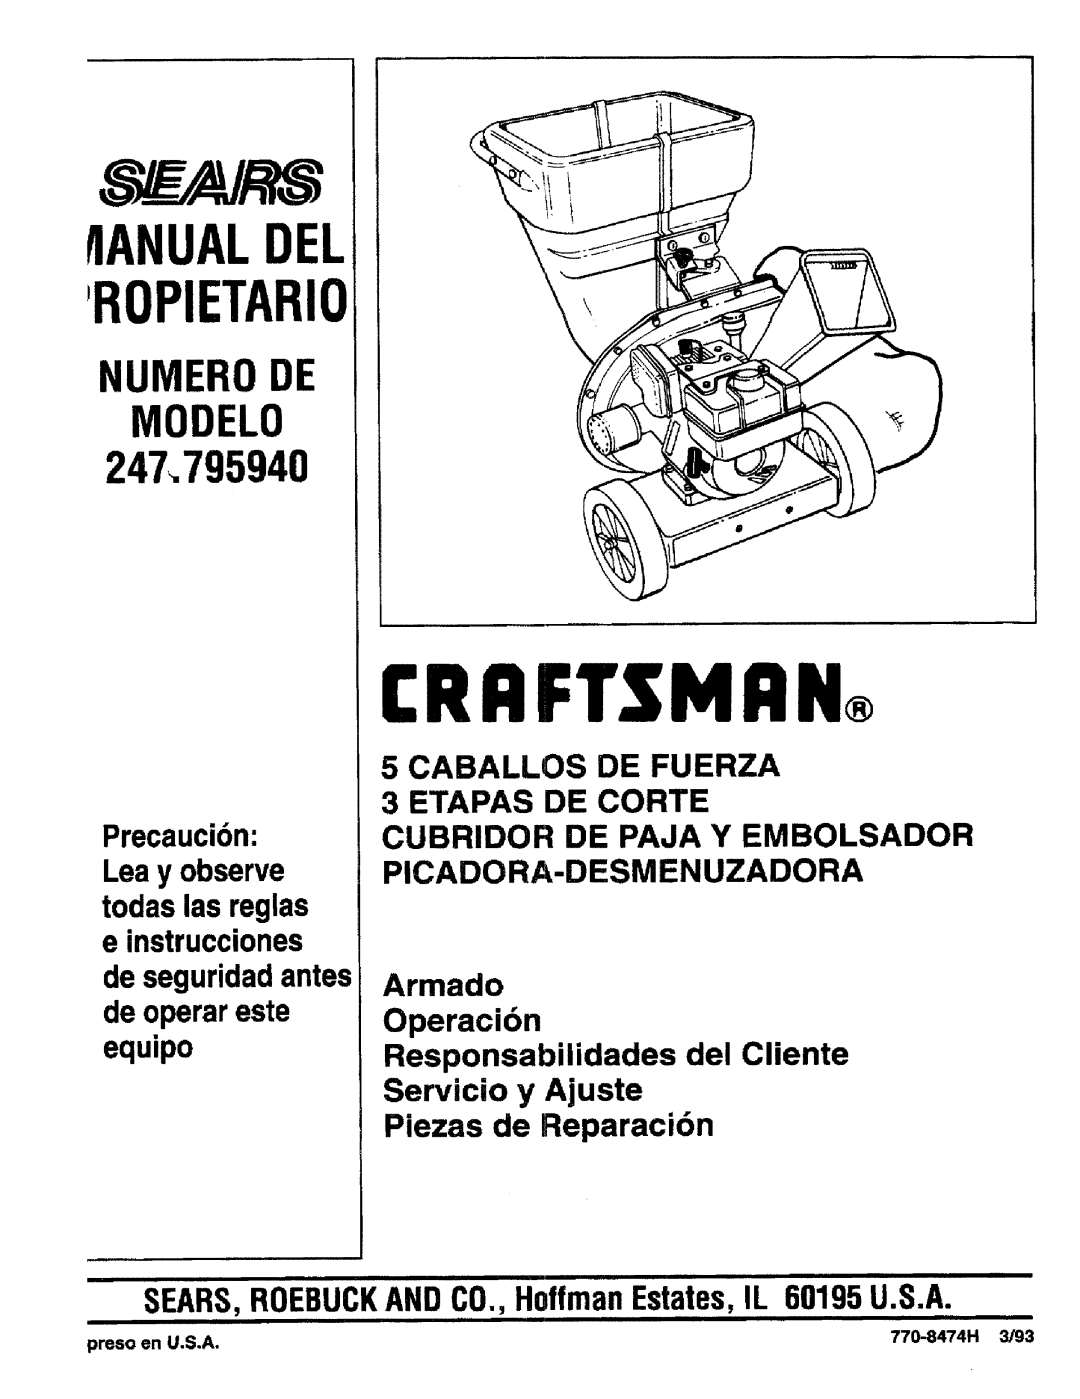 Craftsman 247.795940 manual SEARS,ROEBUCKANDCO.,HoffmanEstates,IL 60195U.S.A, Crrftsmrn, Ropietario, flANUALDEL 